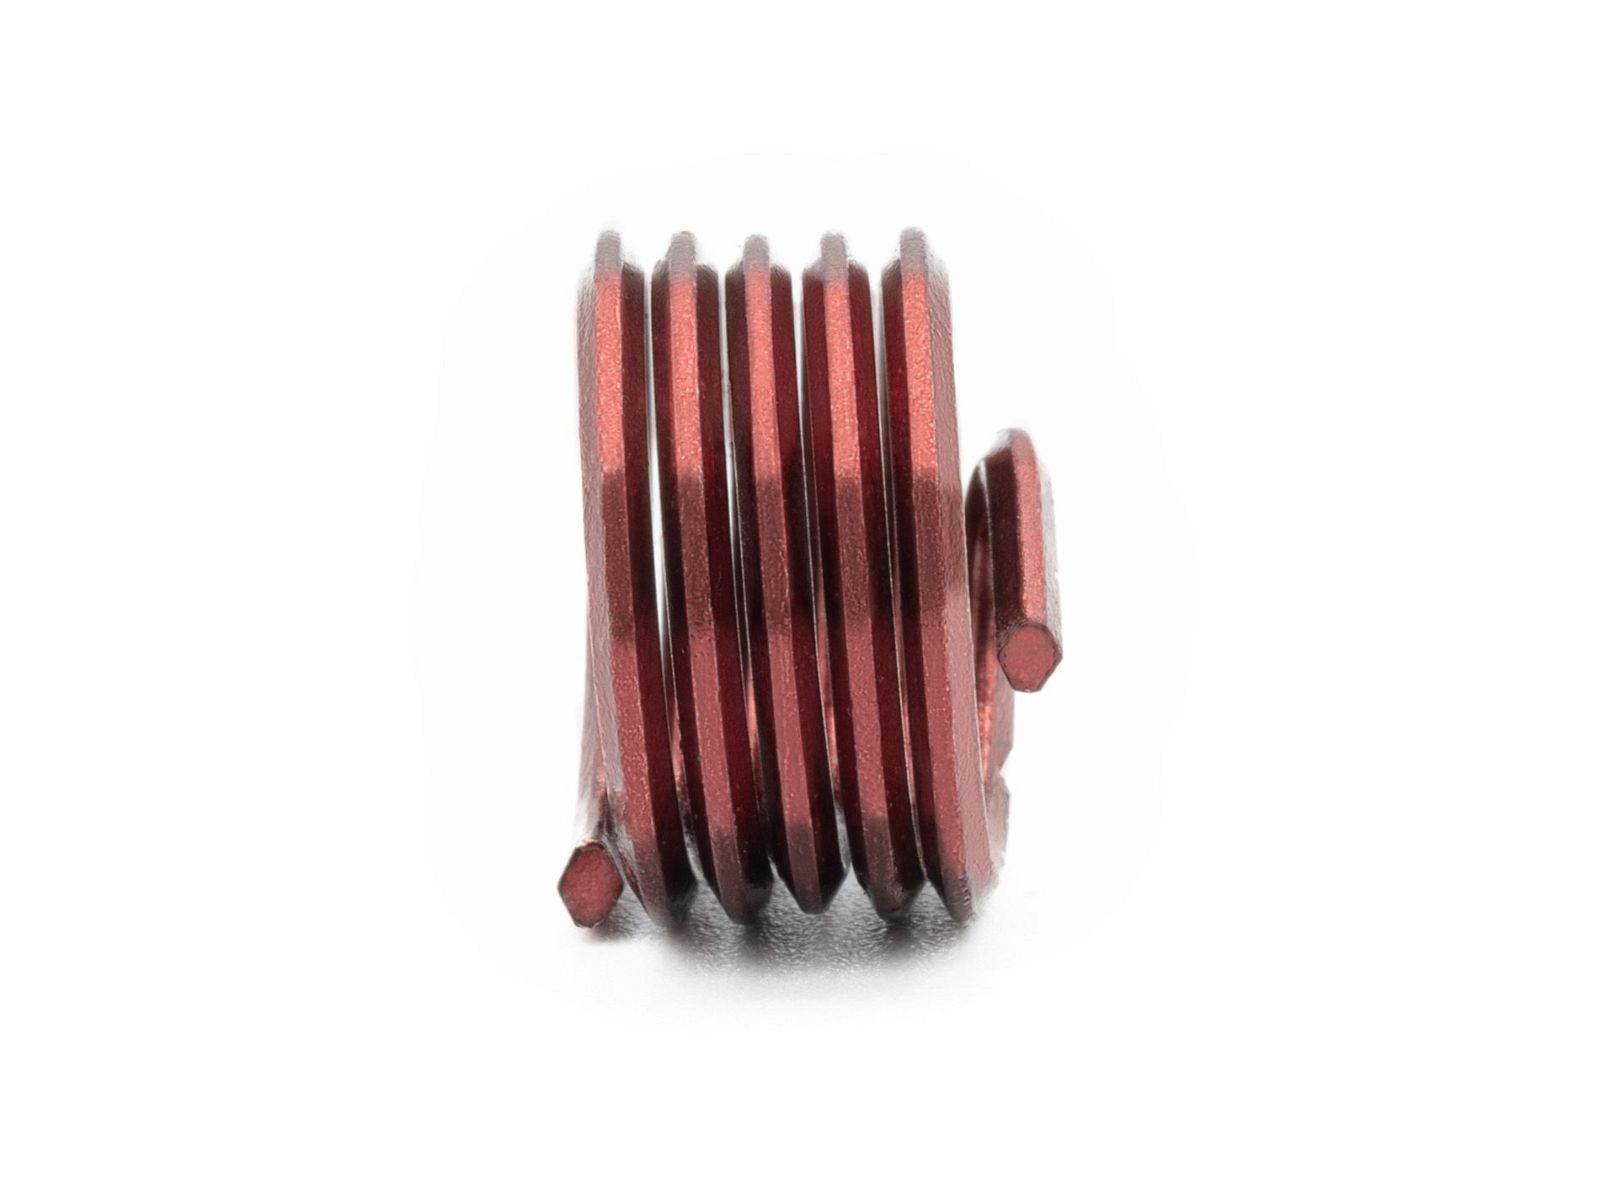 BaerCoil Wire Thread Inserts BSF 3/16 x 32 - 1.0 D (4.76 mm) - screw grip (screw locking) - 100 pcs.